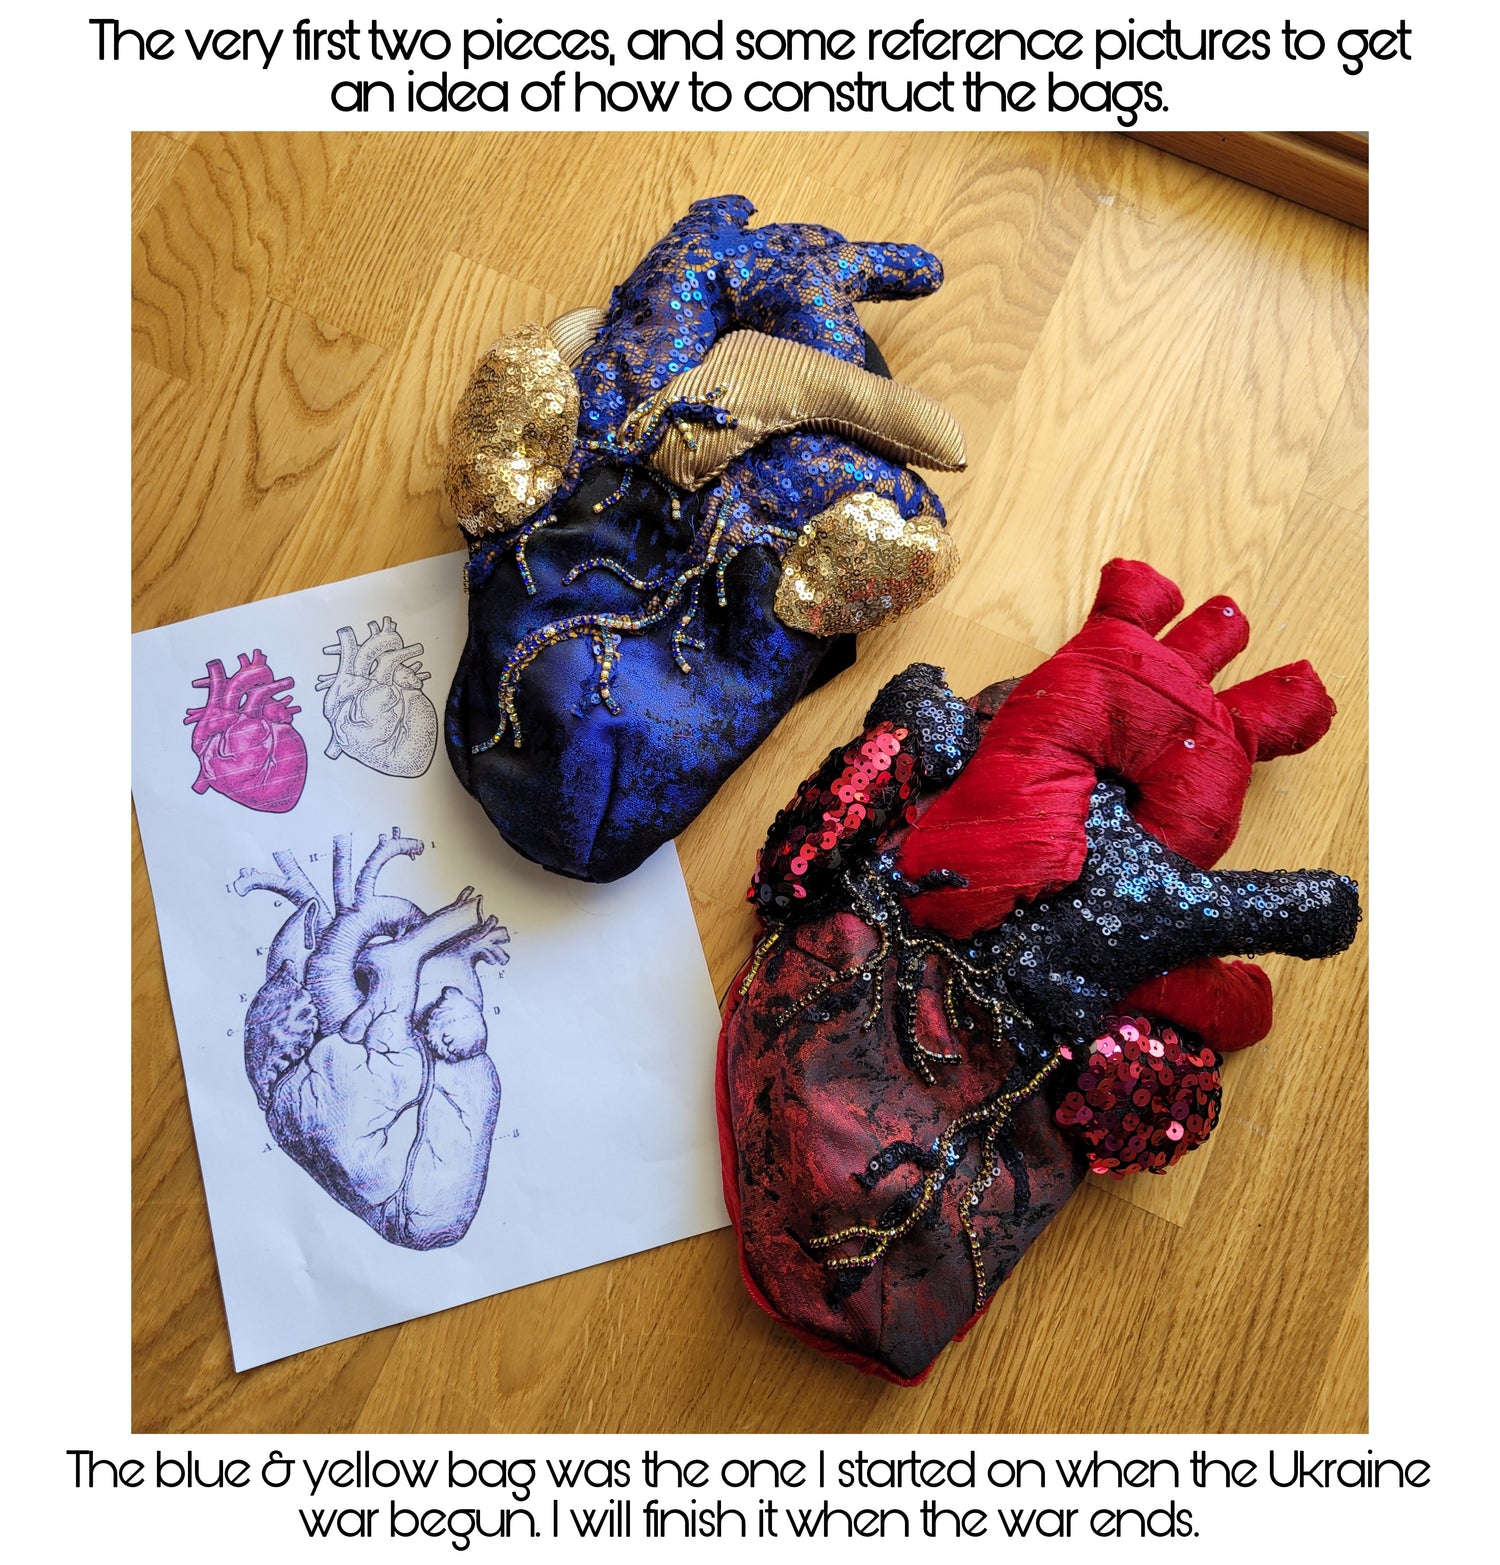 Anatomical Heart Bag - Medcoat